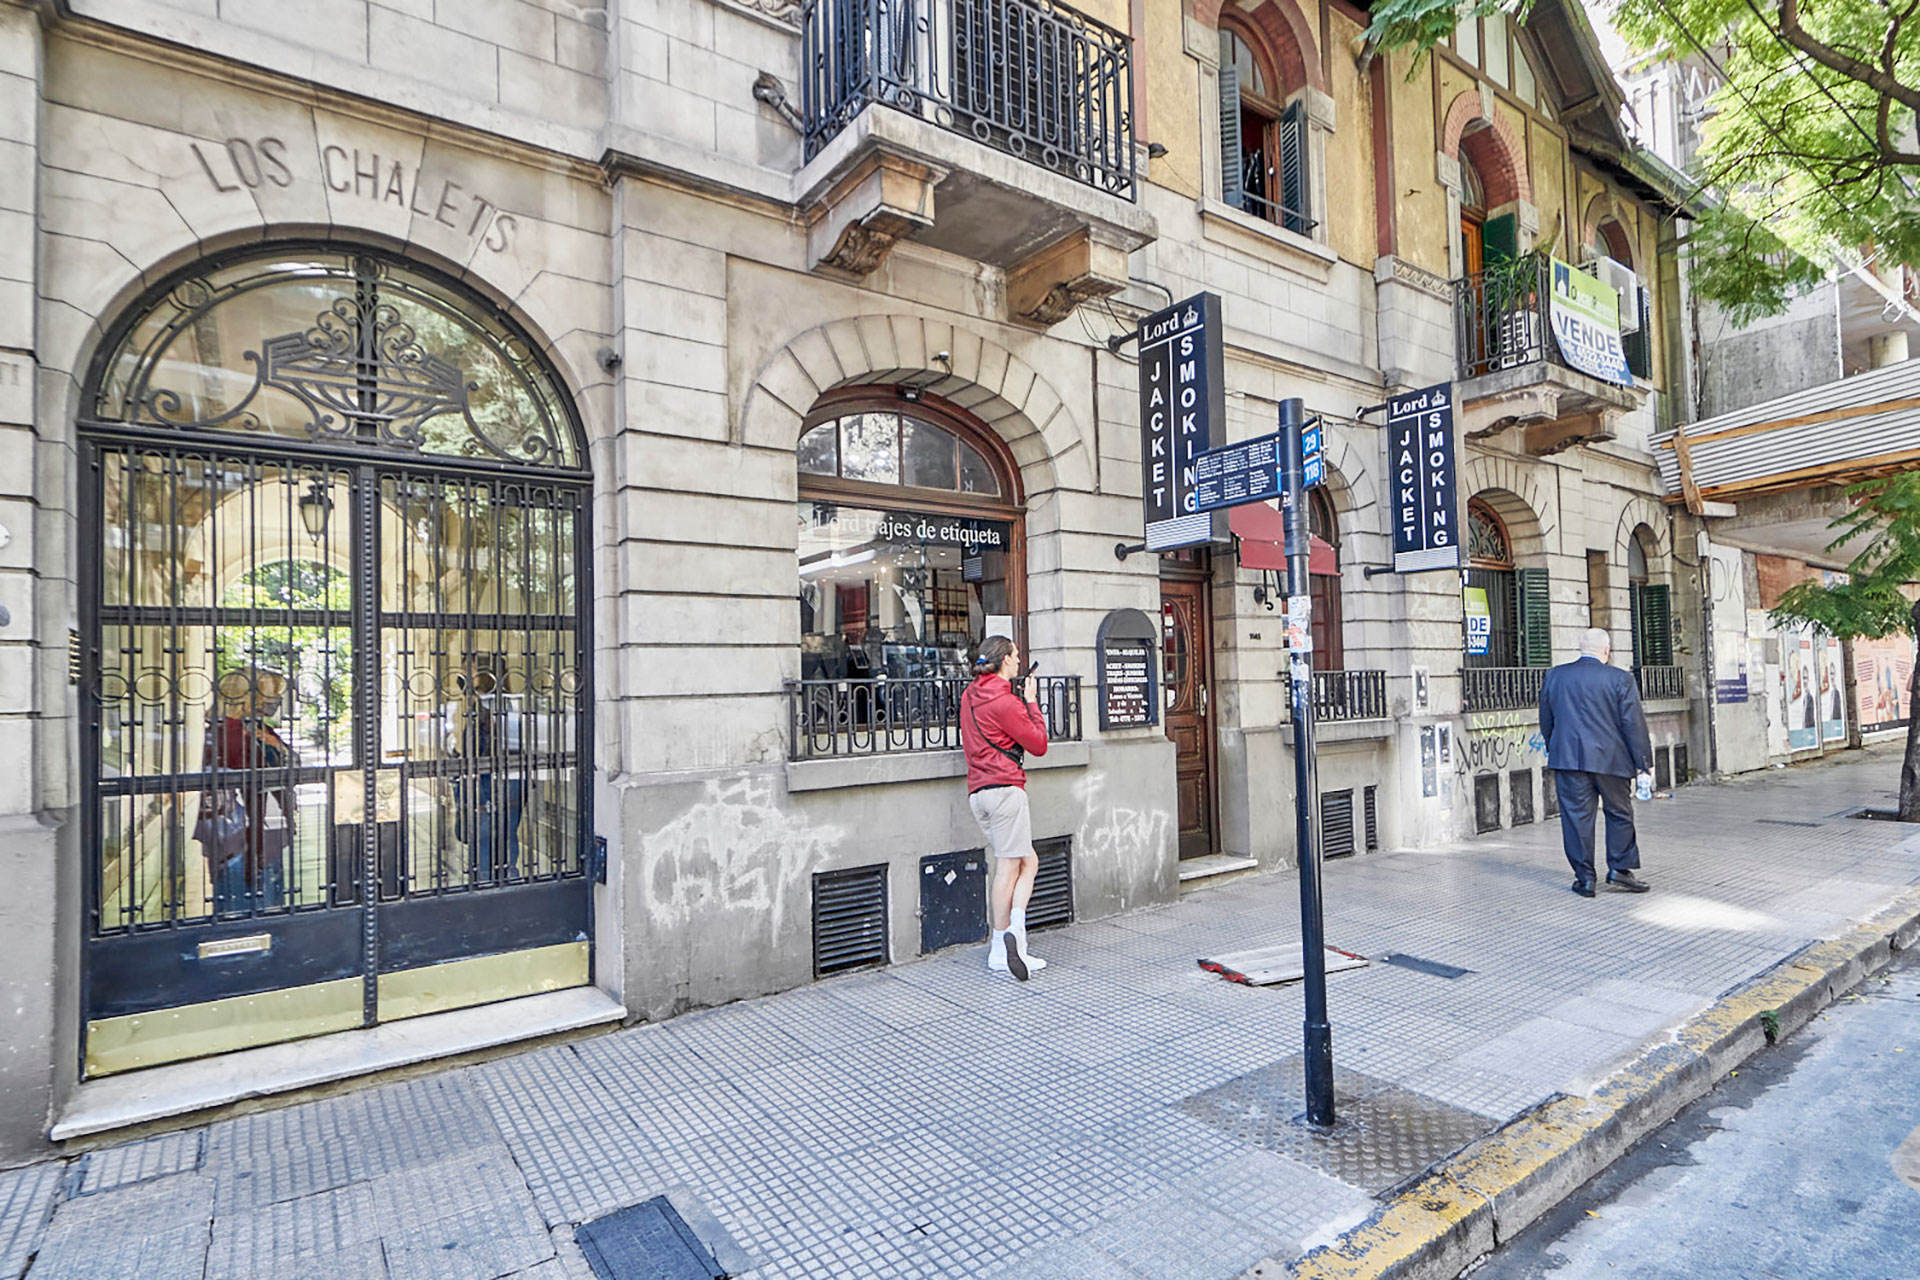 La propiedad está dentro del complejo "Los Chalets" ubicado en Palermo y que está catalogada de Patrimonio Histórico por la Ciudad de Buenos Aires (Fotos Gentileza: Bresson Realty Buenos Aires)